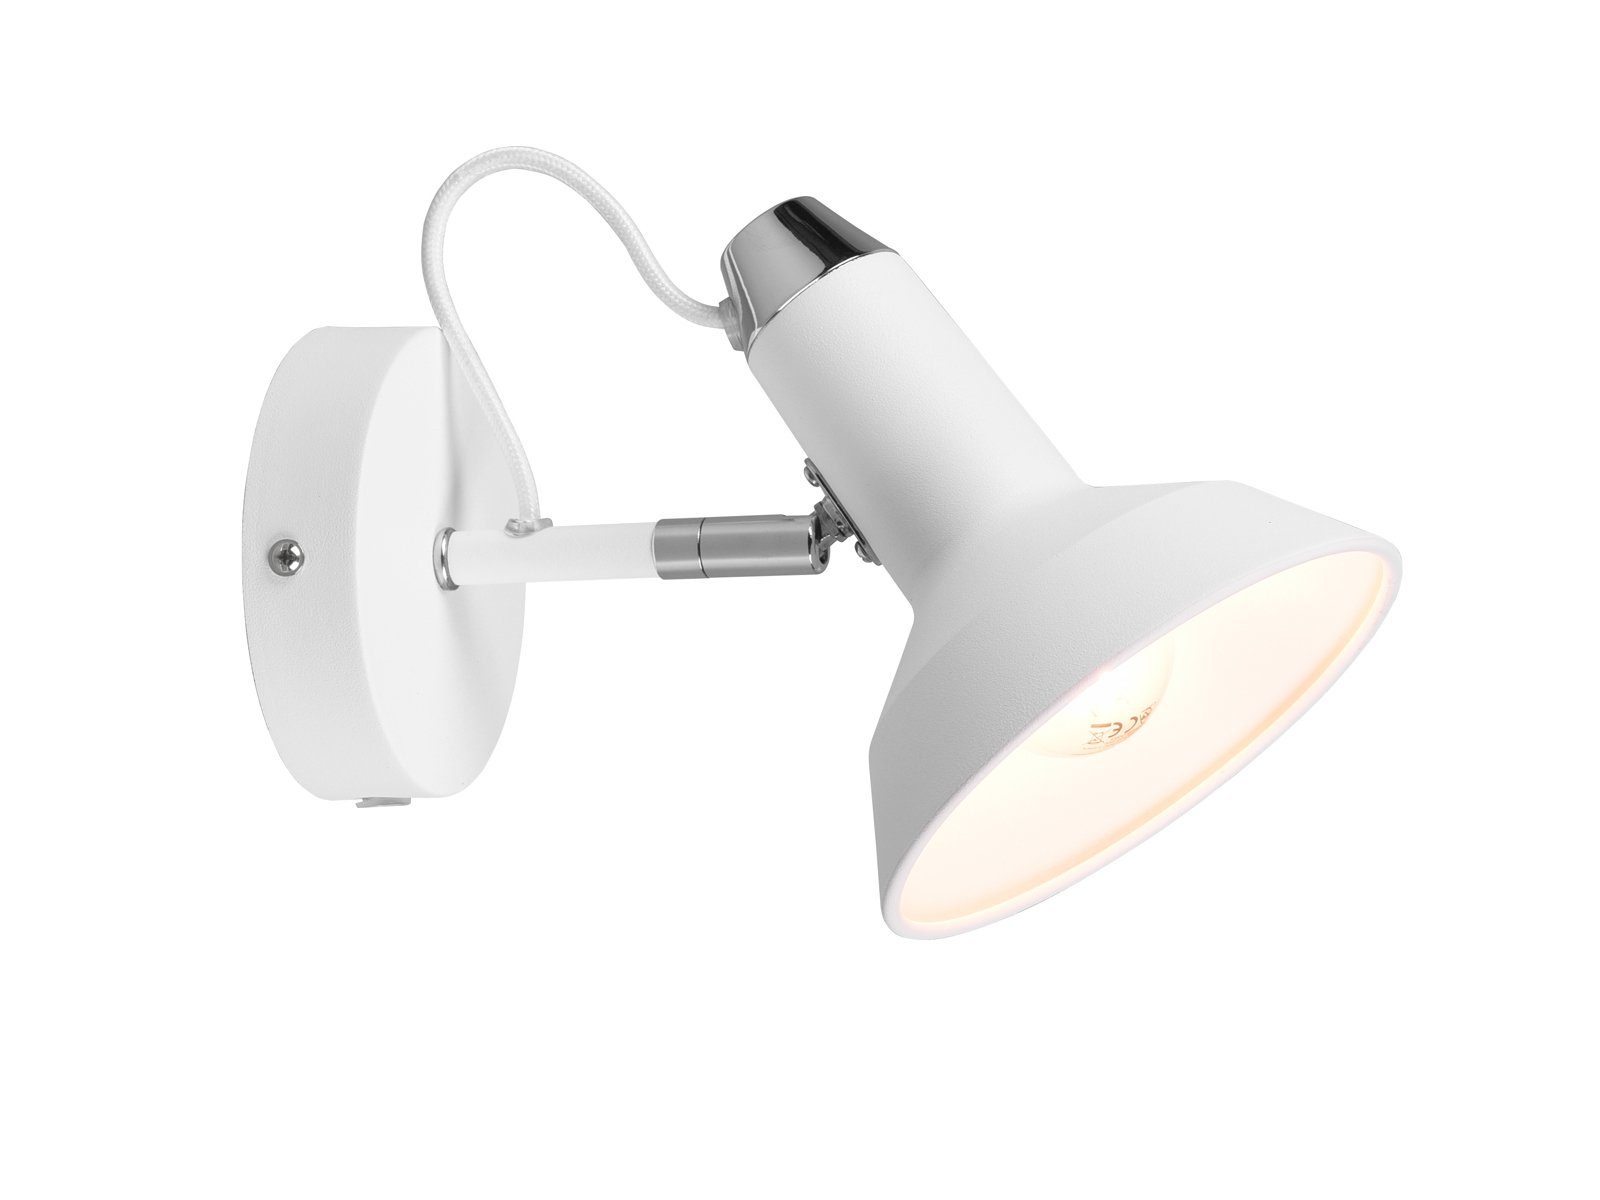 dimmbar Weiß LED LED Lese-Lampe Industrial wechselbar, innen, Wandstrahler, Dimmfunktion, Weiß meineWunschleuchte Wandleuchte matt Treppenhaus Bett